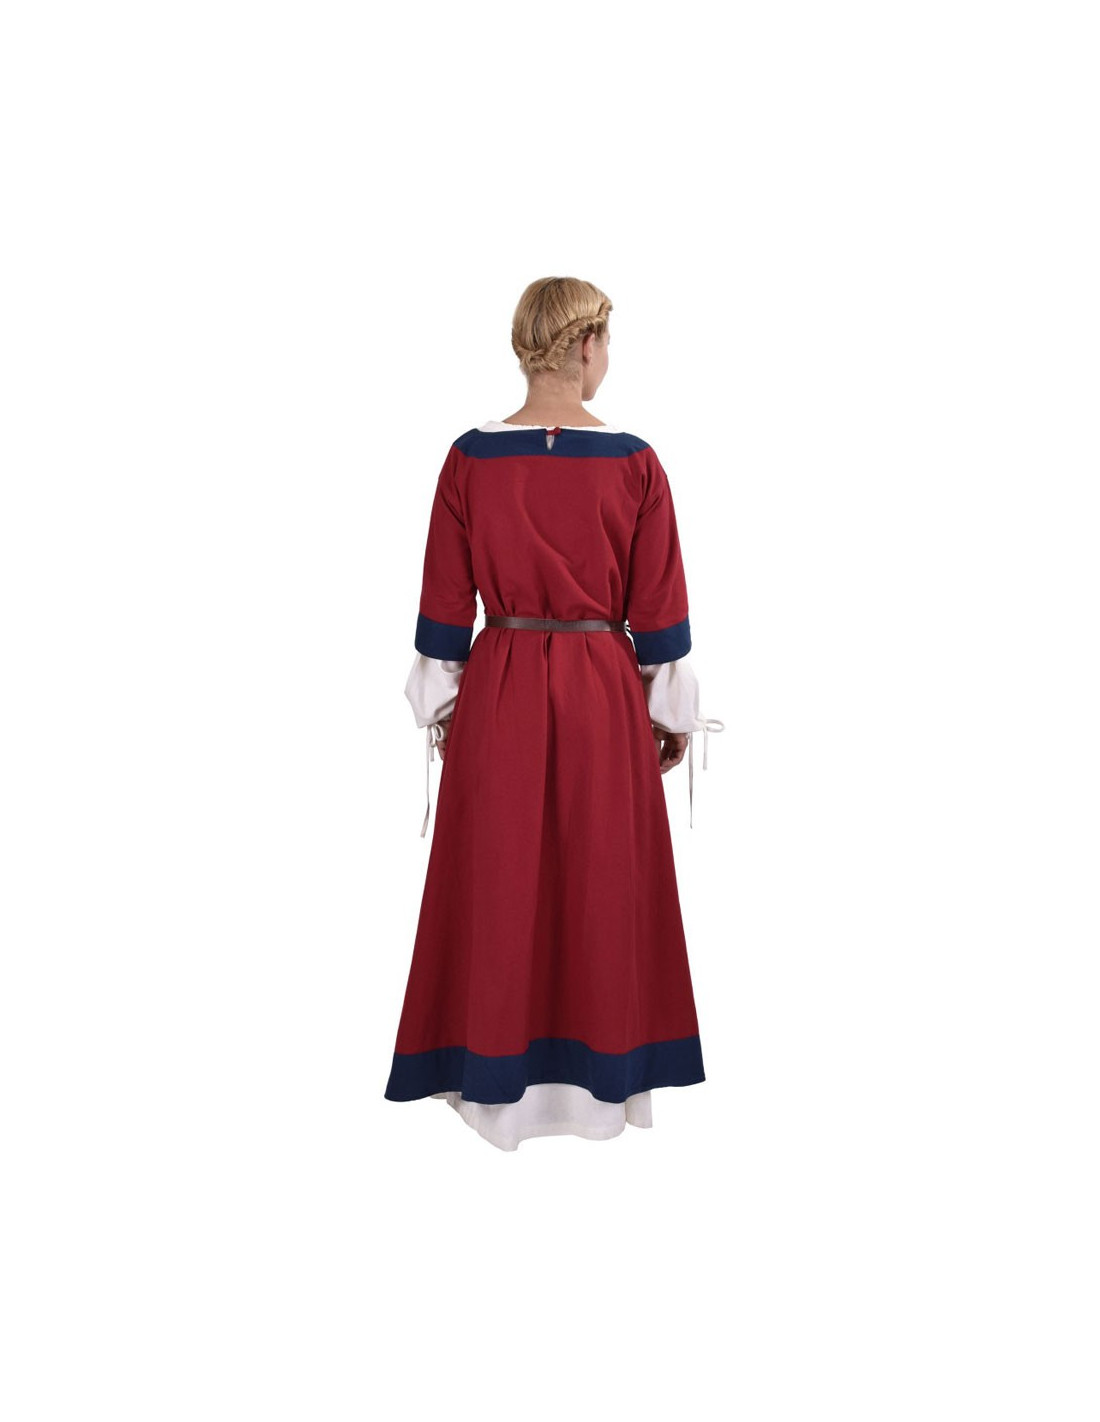 53 ideas de Disfraz dama medieval  vestido medieval, trajes medievales,  ropa medieval